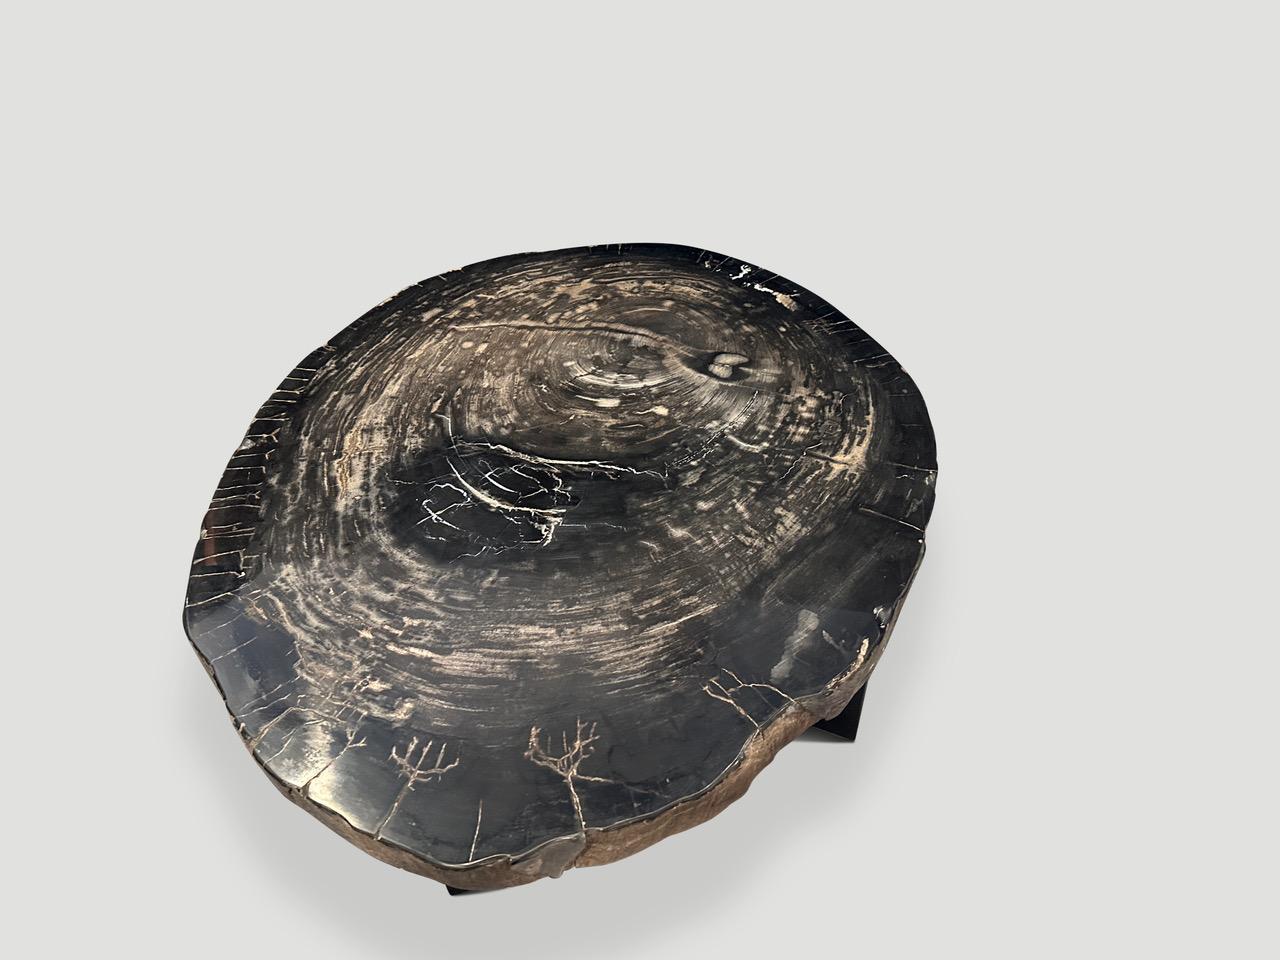 Atemberaubende seltene blaue Schwarztöne auf diesem Couchtisch aus versteinerter Holzplatte. Diese große, beeindruckende Platte schwebt auf einem minimalistischen Metallsockel. Auf der Oberseite sind kontrastierende weiße Markierungen und natürliche